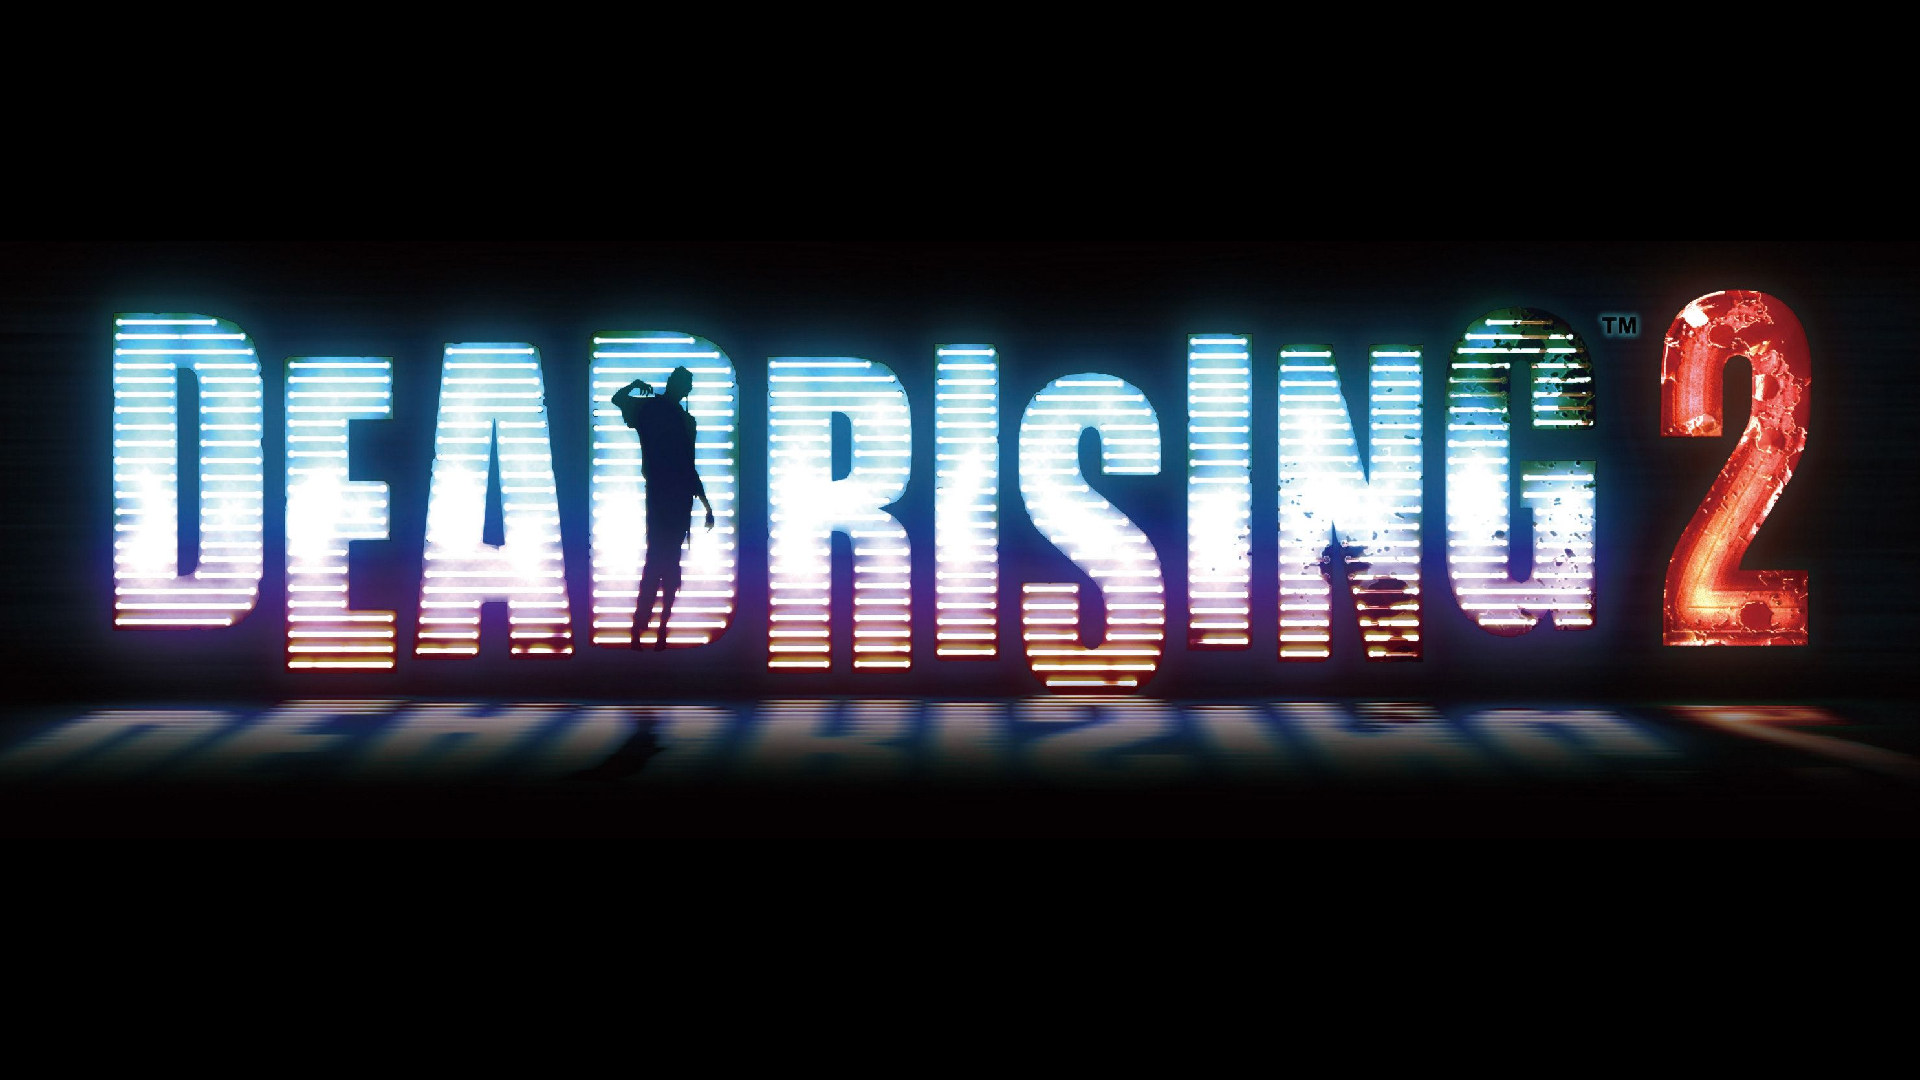 Dead Rising 2 Logo